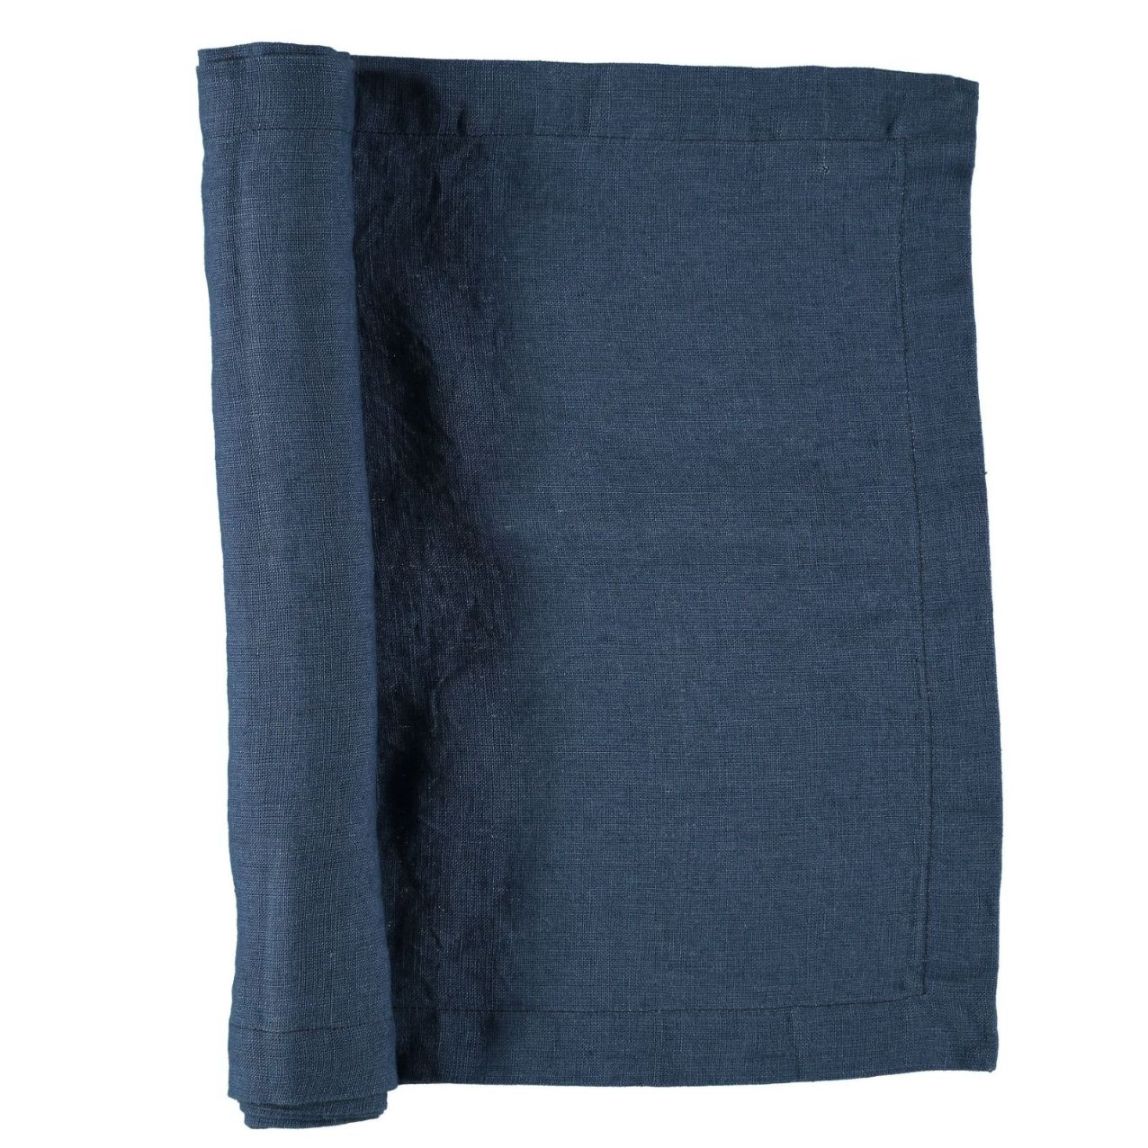 Löpare i tvättat linne som ger en mjuk känsla och en fin patina från Gripsholm i marinblått. 35 x 120 cm.